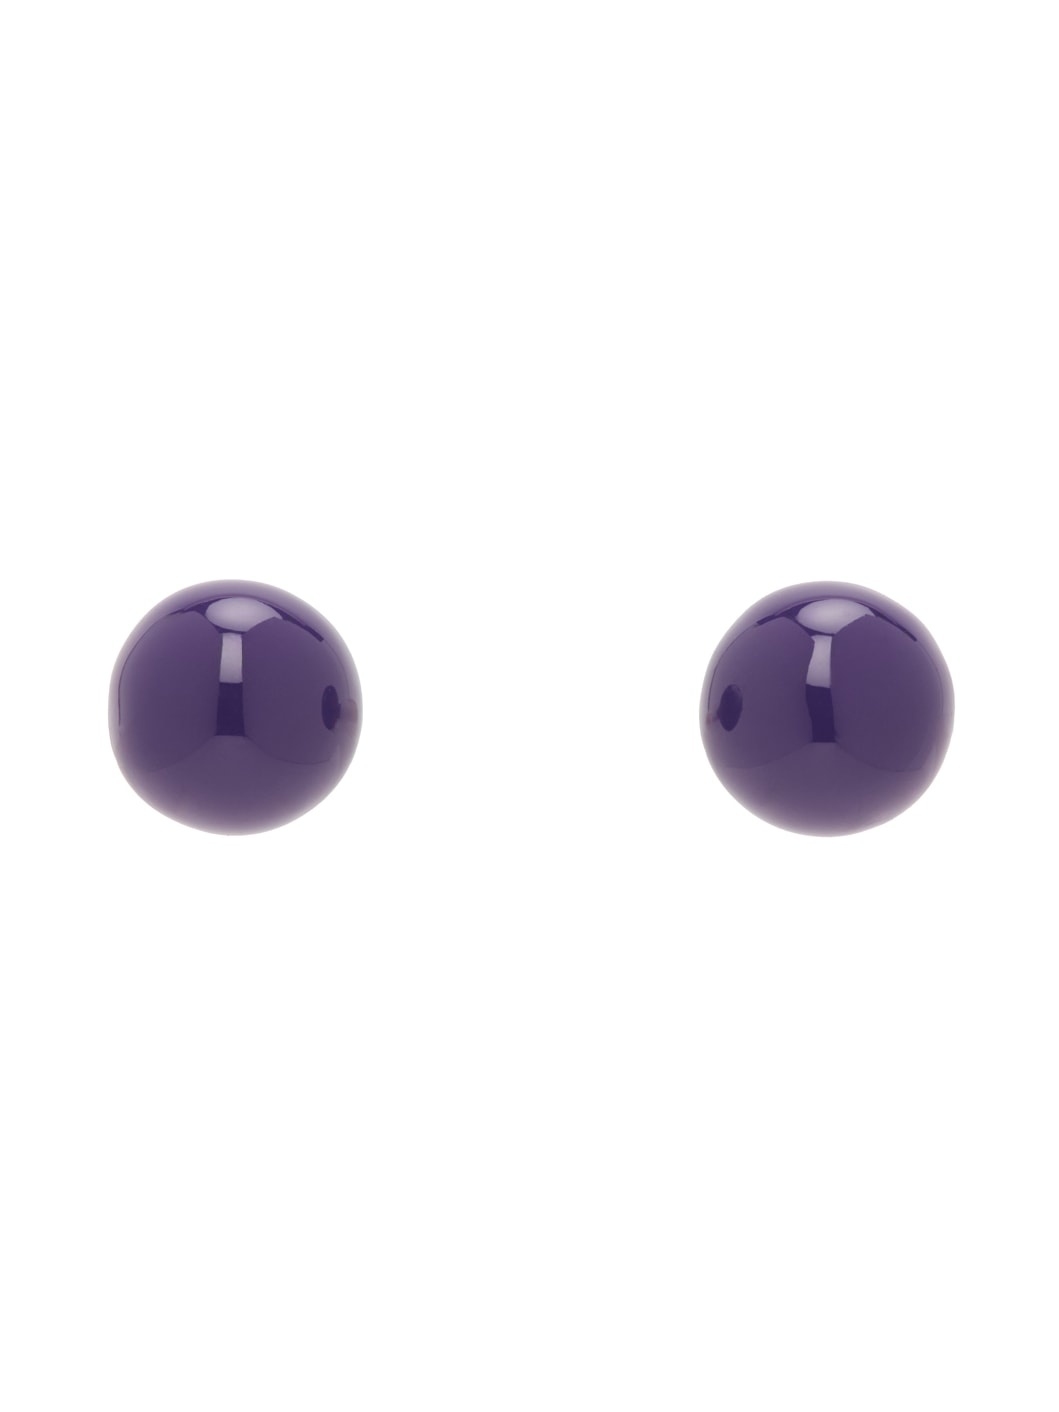 Silver & Purple Enameled Earrings - 1